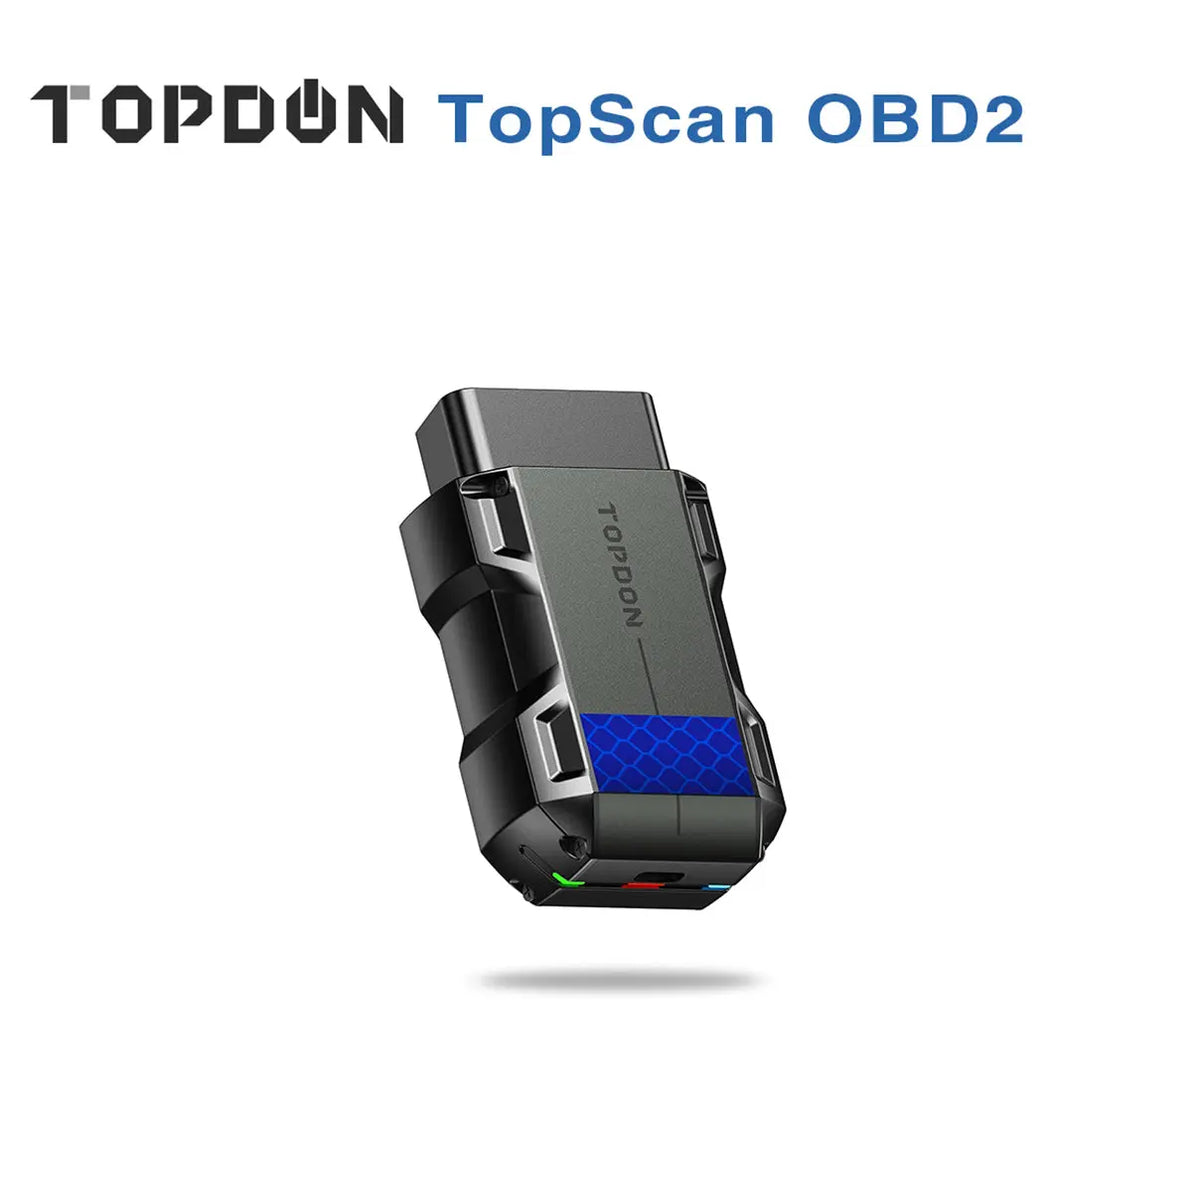 Topdon TopScan OBD2 Full System Diagnose Scanner